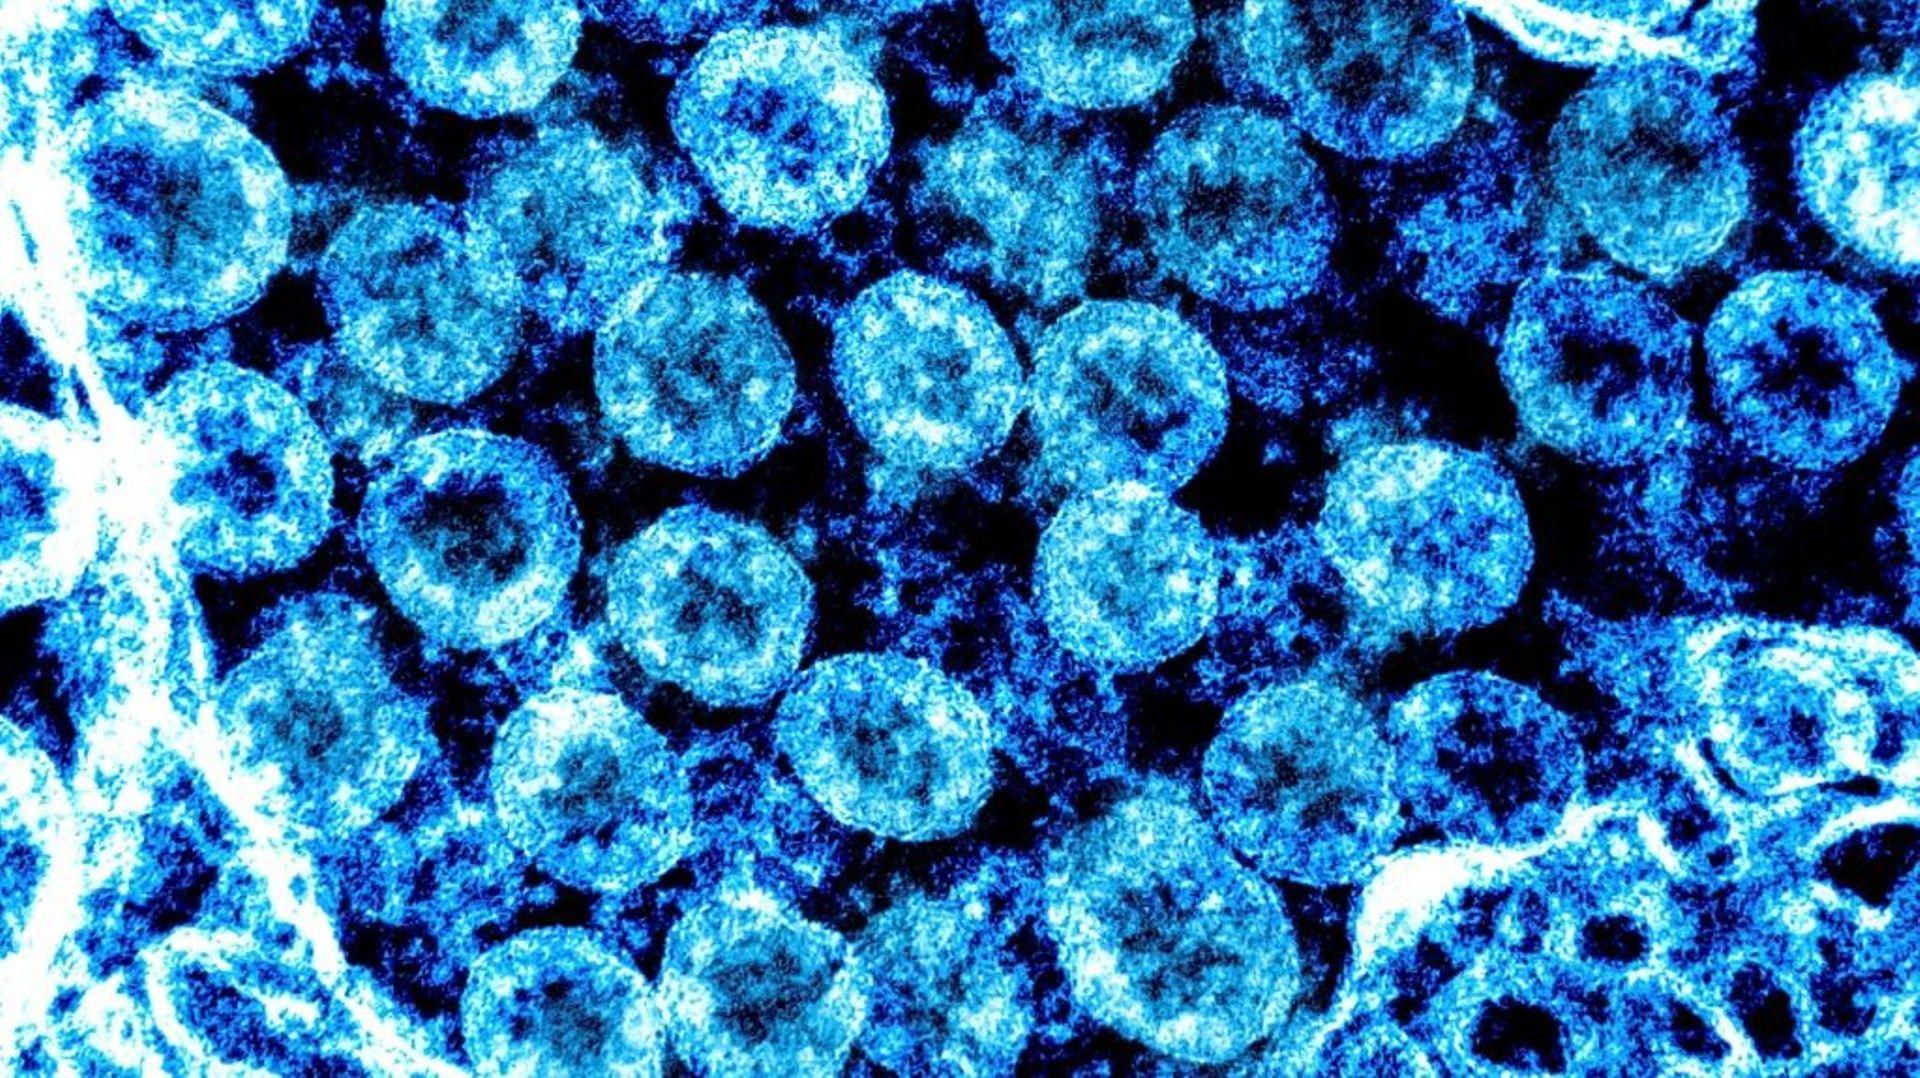 Image non-datée du virus SARS-CoV2, obtenue le 1er août 2021 